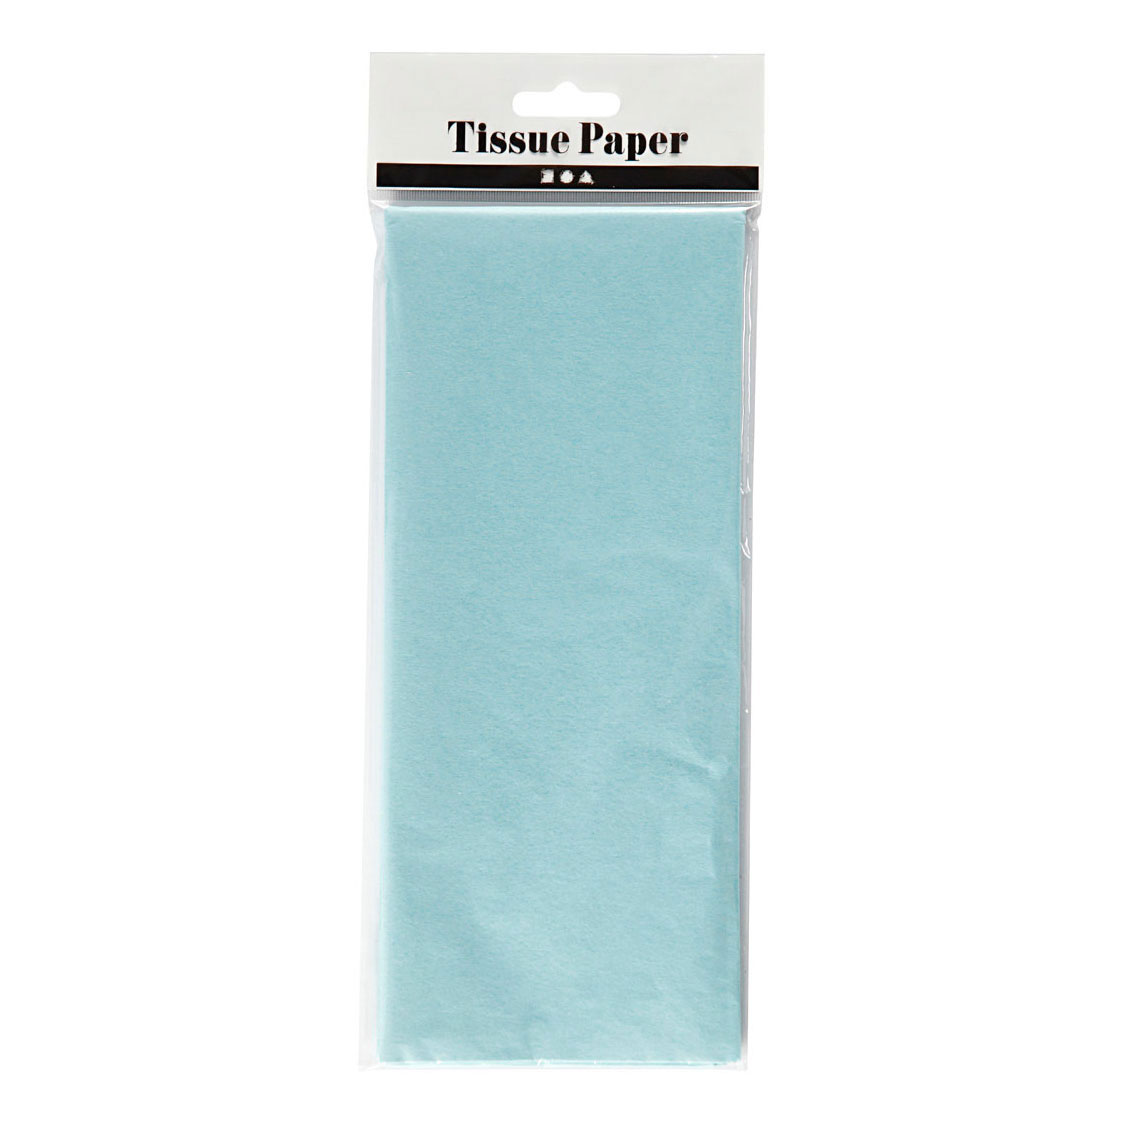 Papier de soie Bleu clair 10 Feuilles 14 gr, 50x70cm